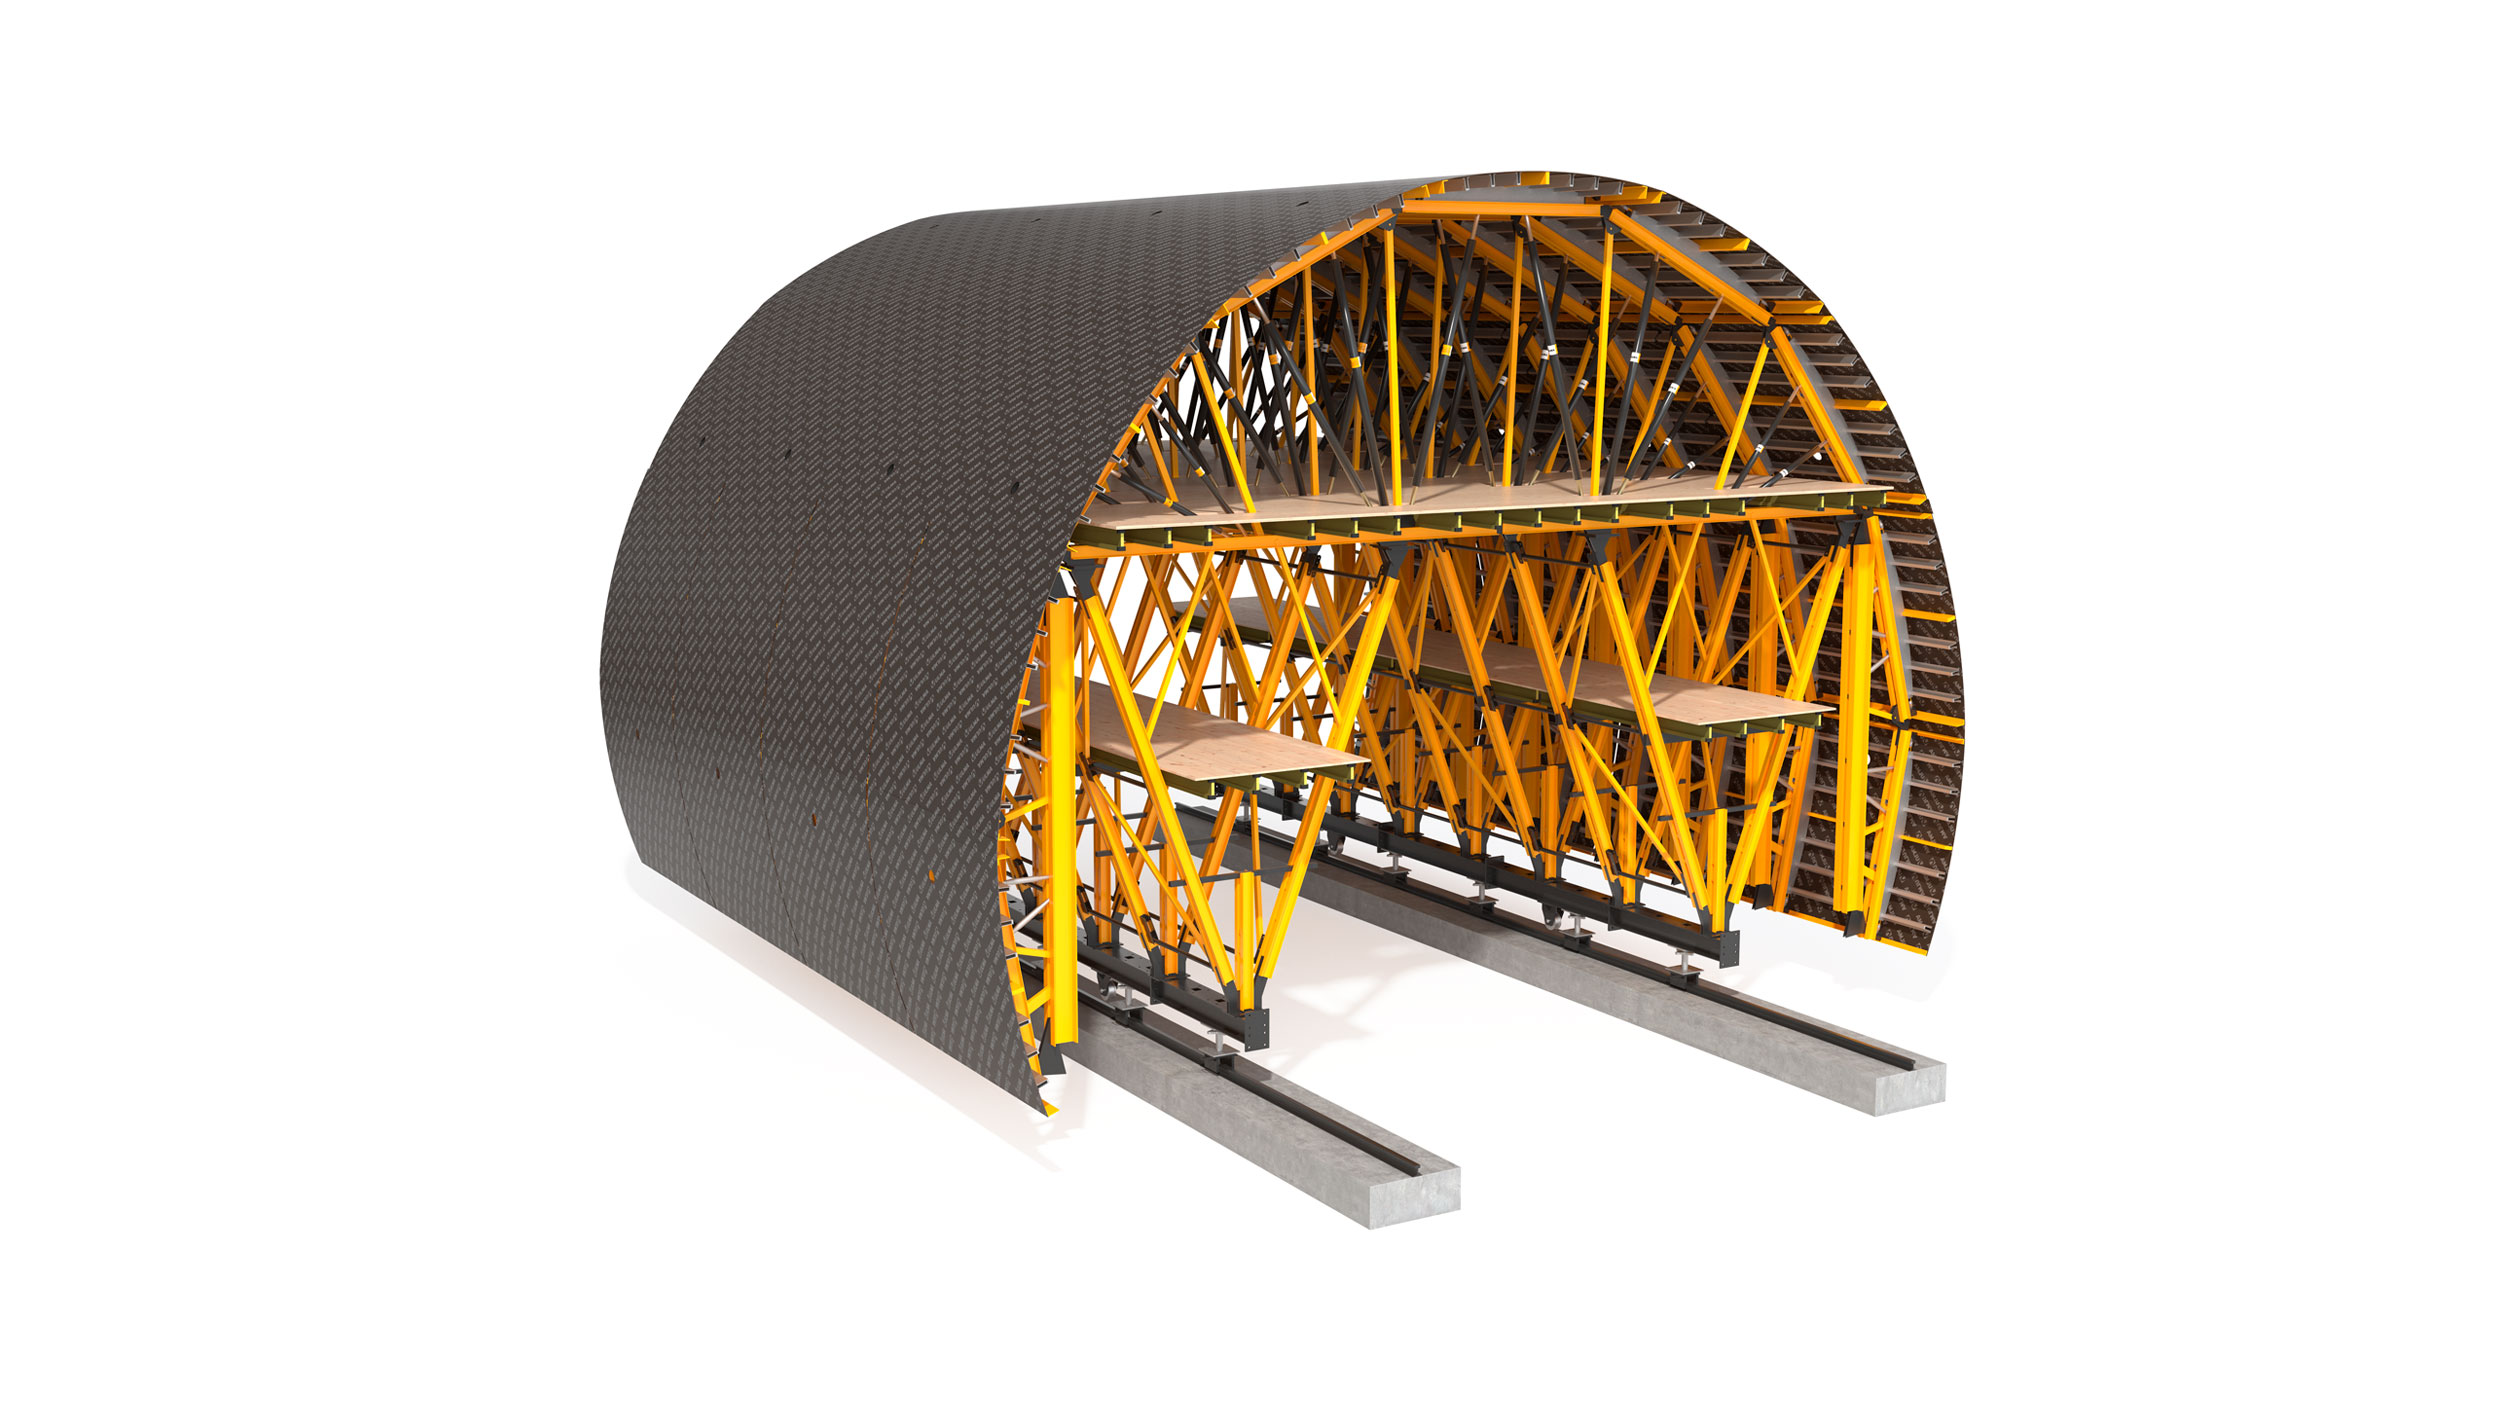 Carro de fôrma totalmente configurável, indicado para túneis de até 1 km de extensão. Sistema de alta rentabilidade em locação.